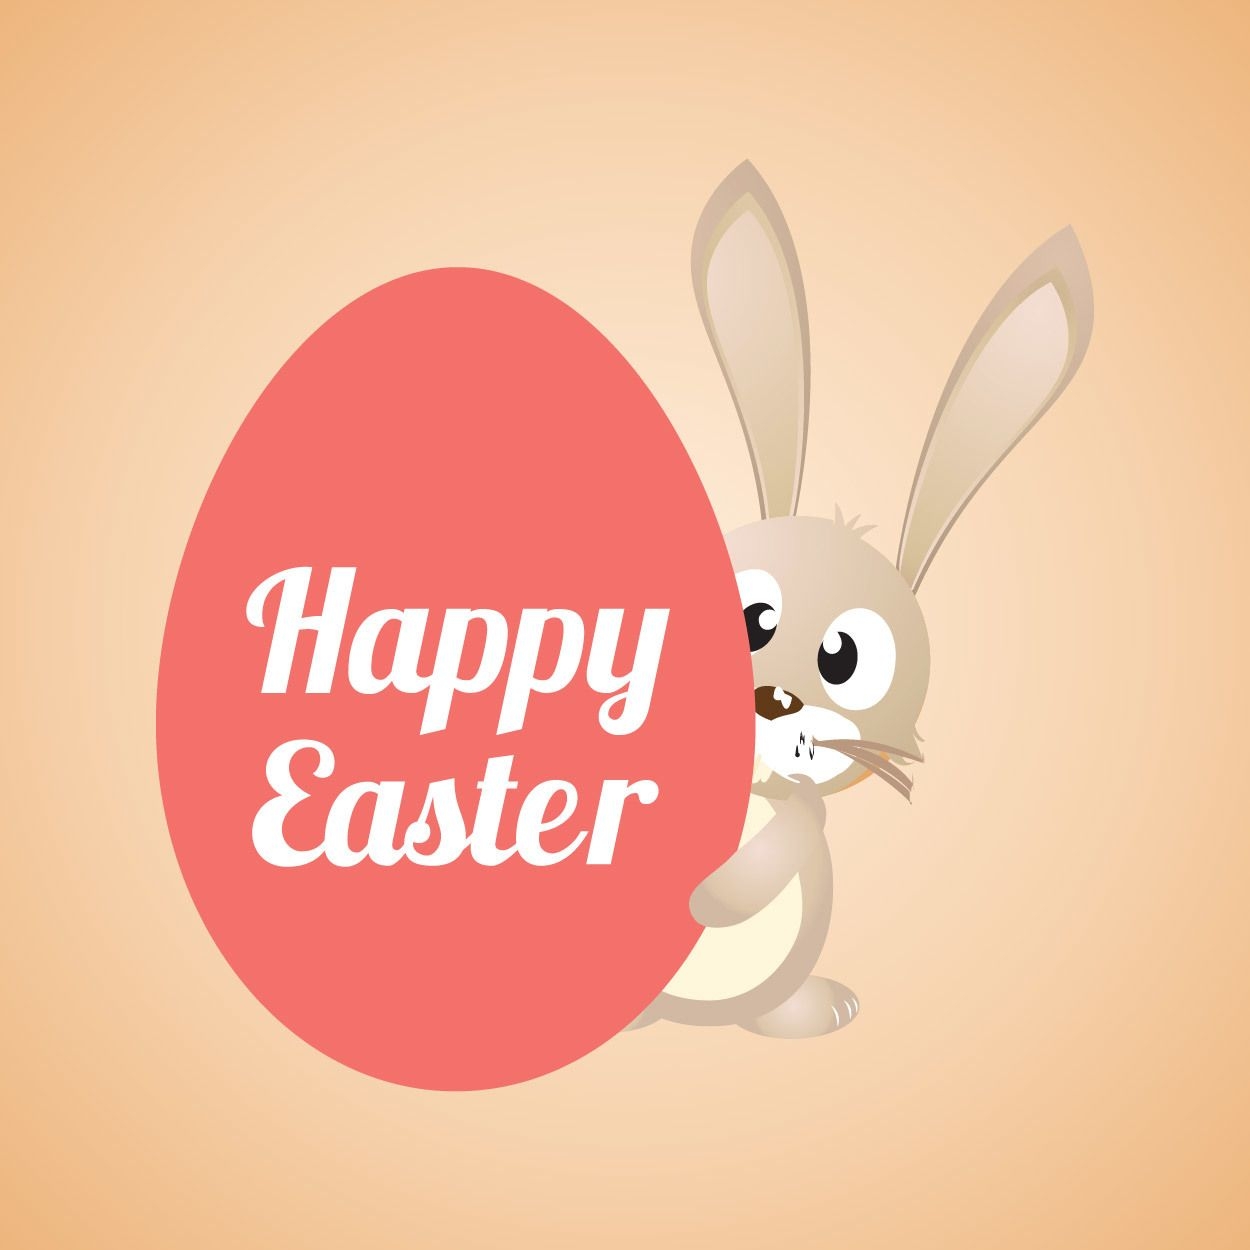 Download Happy Easter Cartoon Banner - Vector download